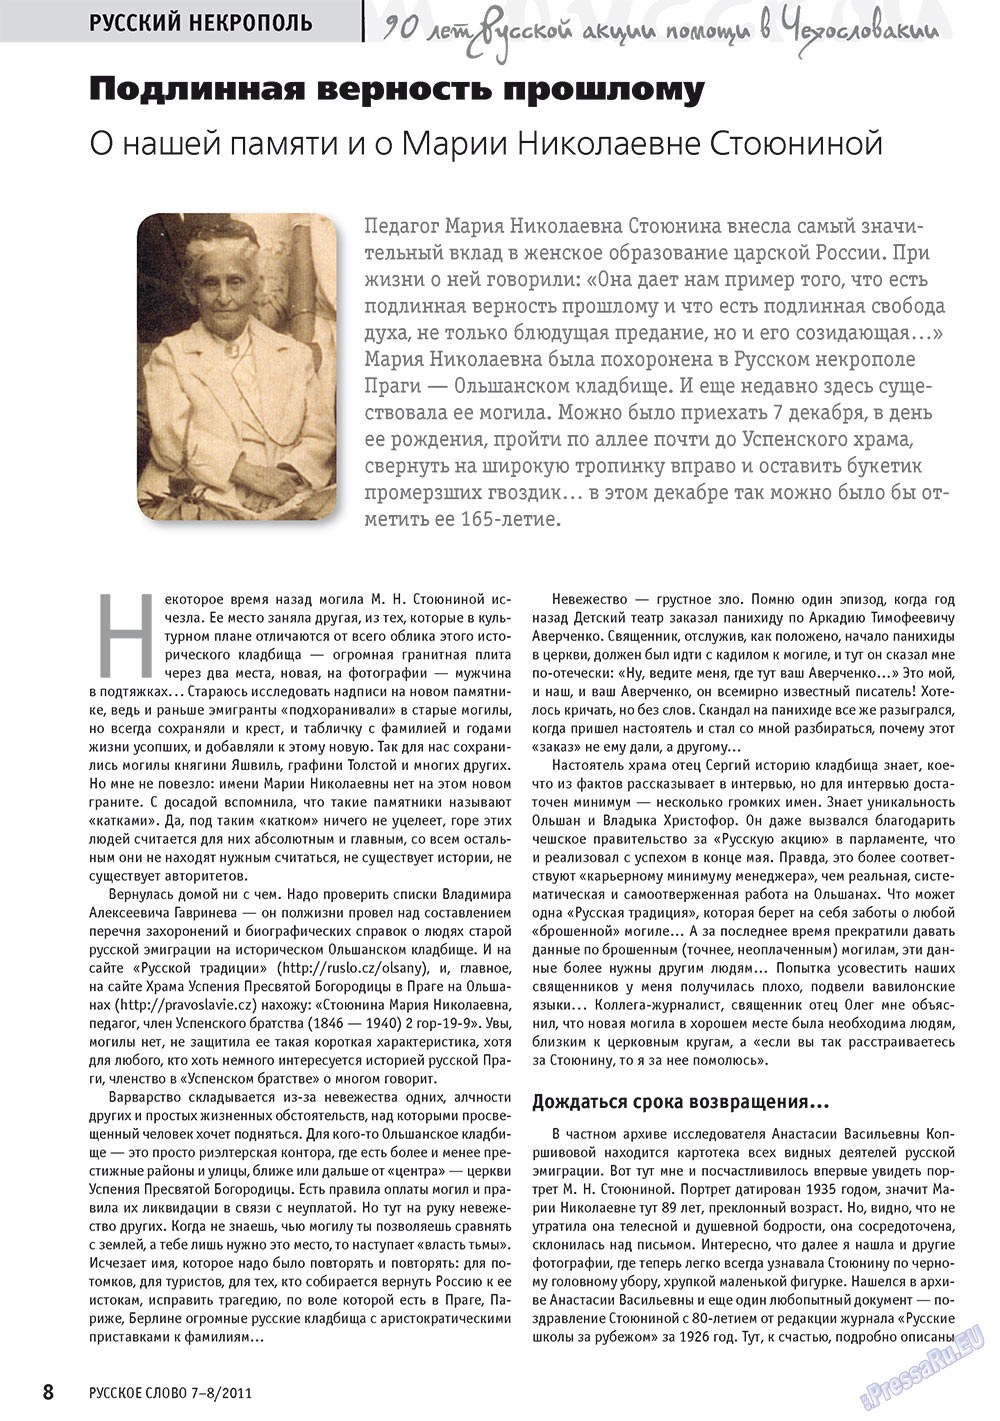 Русское слово, журнал. 2011 №7 стр.10